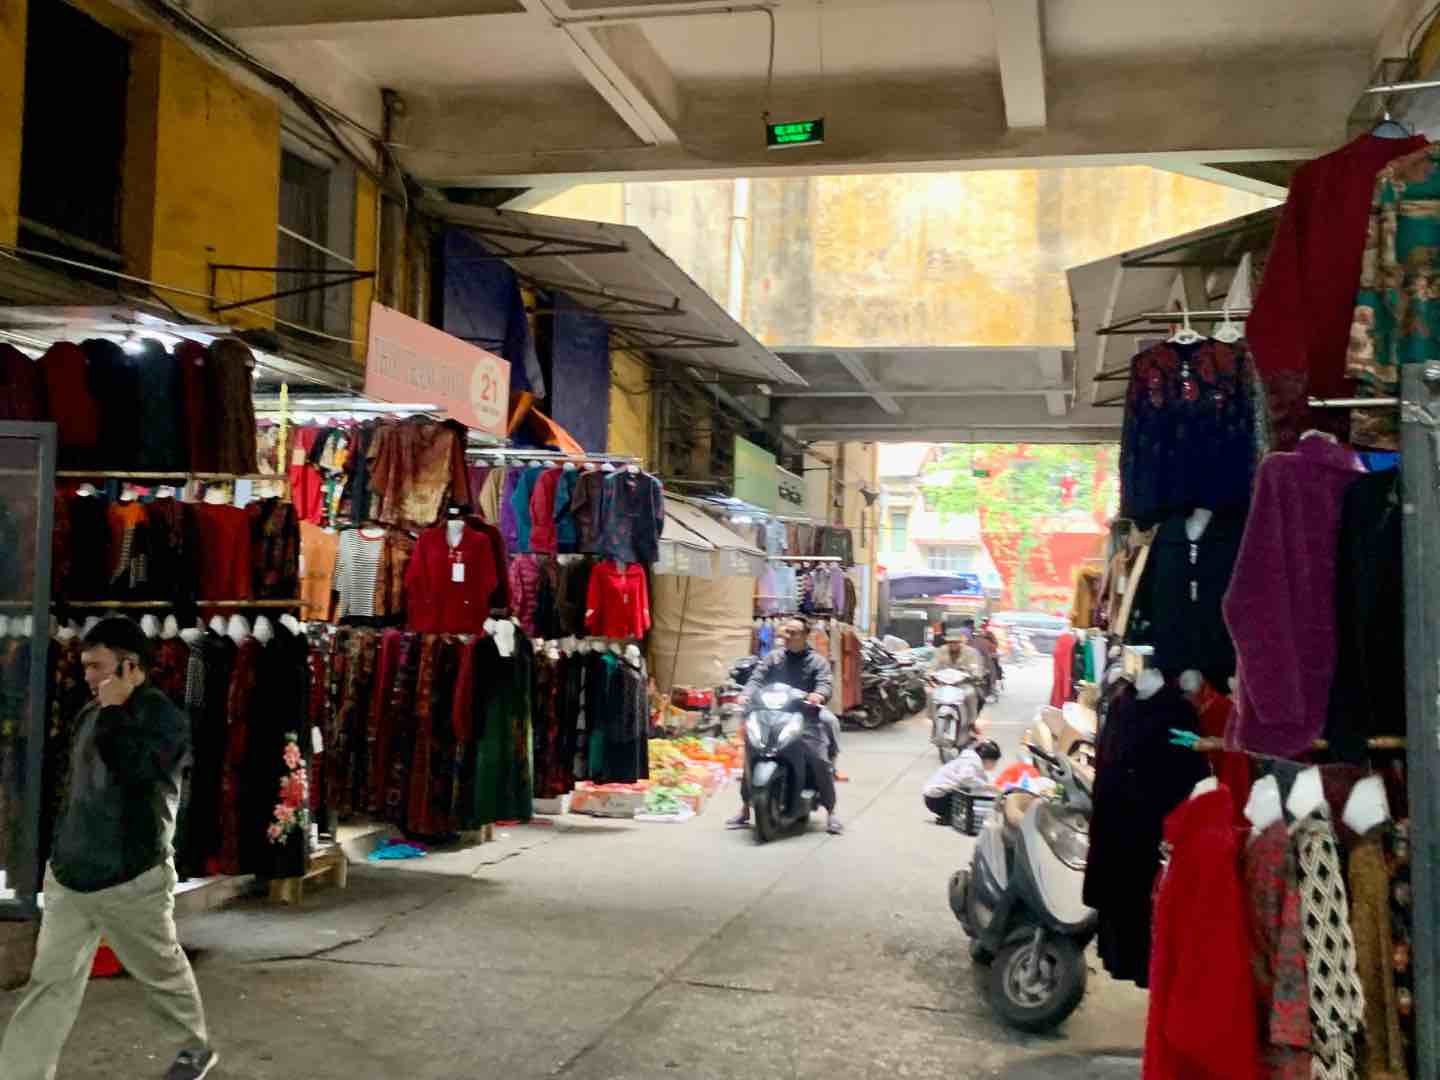 Khung cảnh ảm đạm, vắng vẻ tại chợ Hôm (Hai Bà Trưng, Hà Nội). Ảnh: Nhật Minh